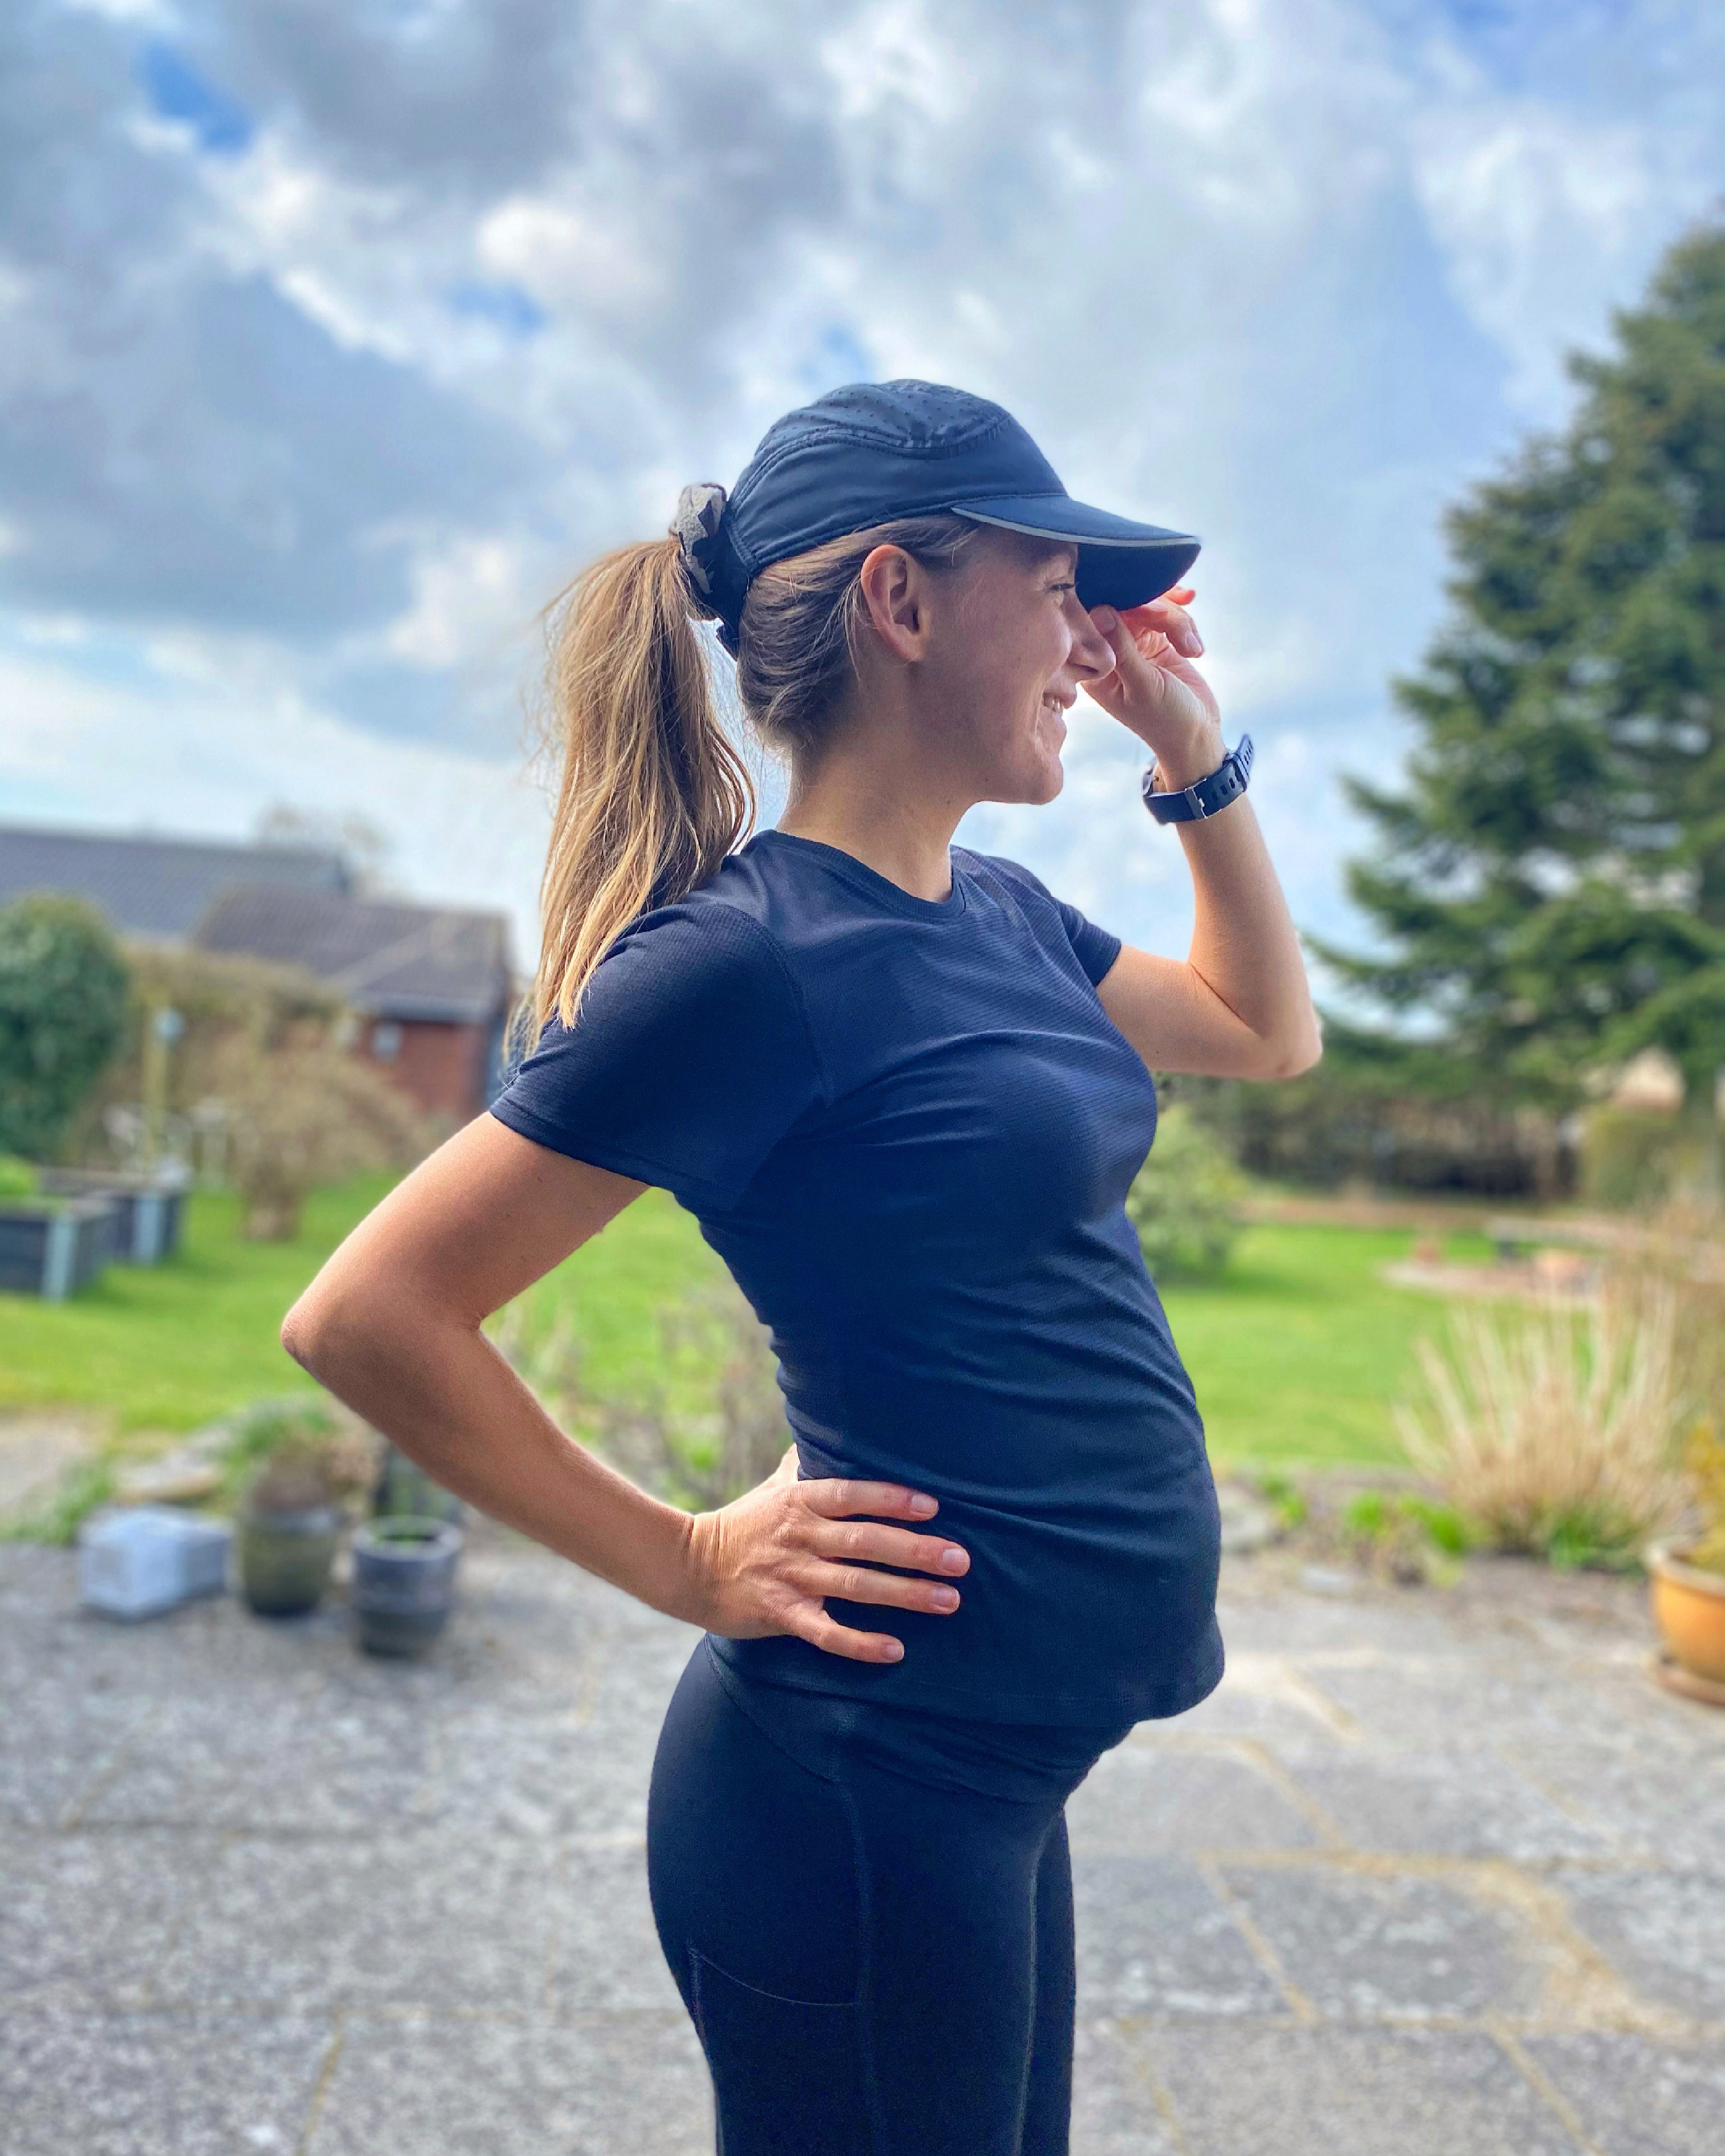 Løb som gravid: løber du som gravid | LØBEREN